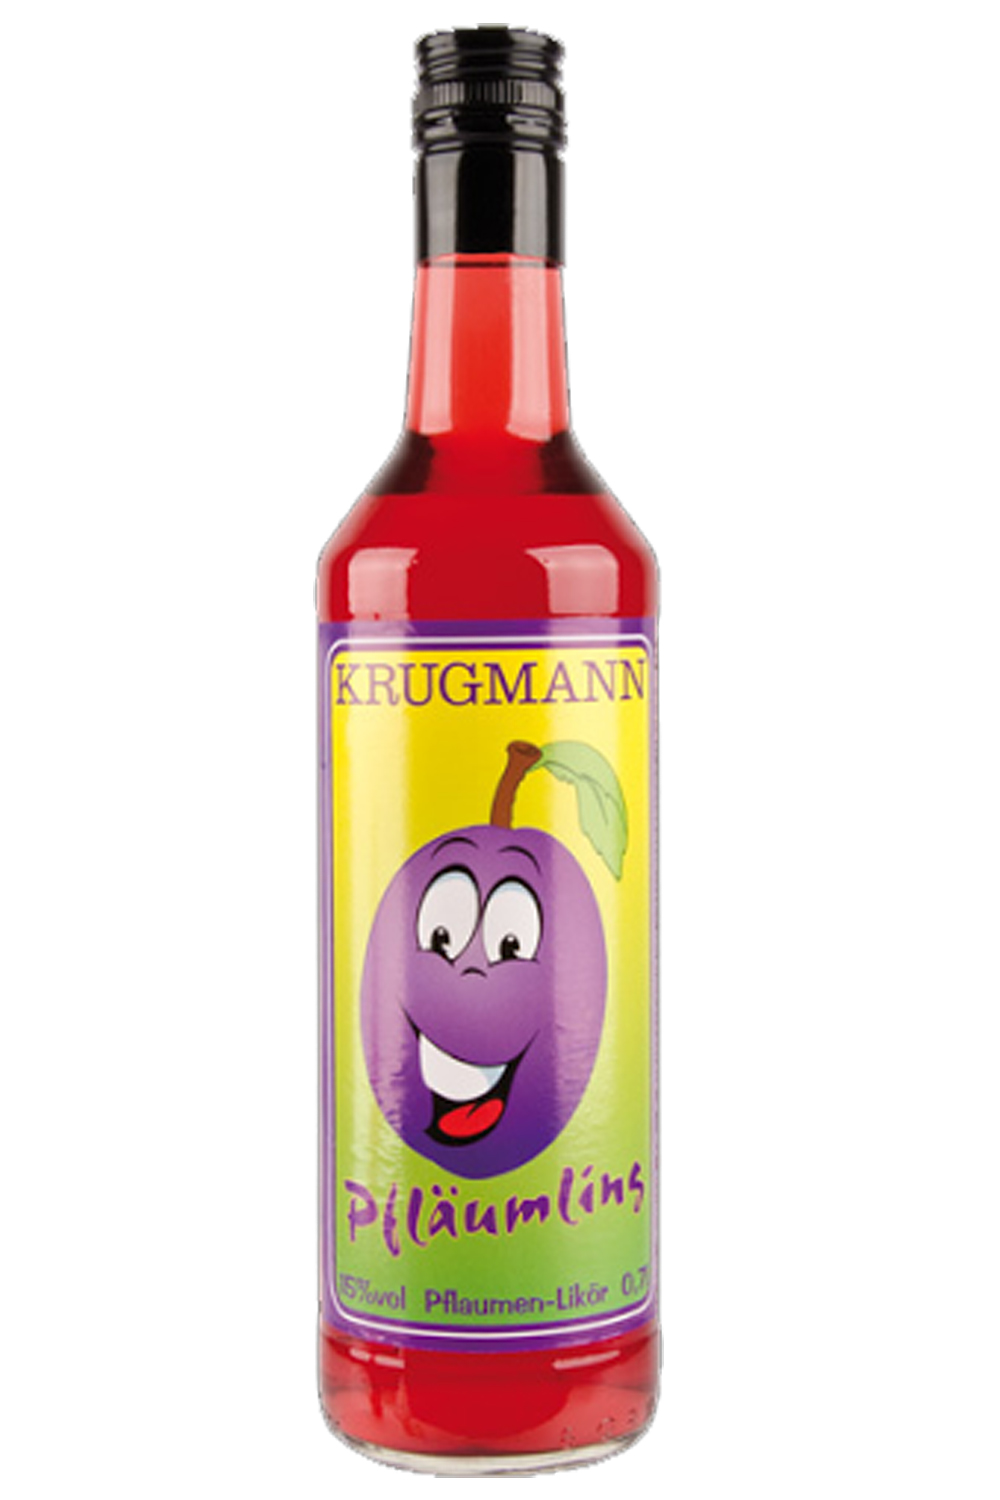 Krugmann Pfläumling Pflaumenlikör 0,7 Liter - Getraenke-Handel.com ist ...